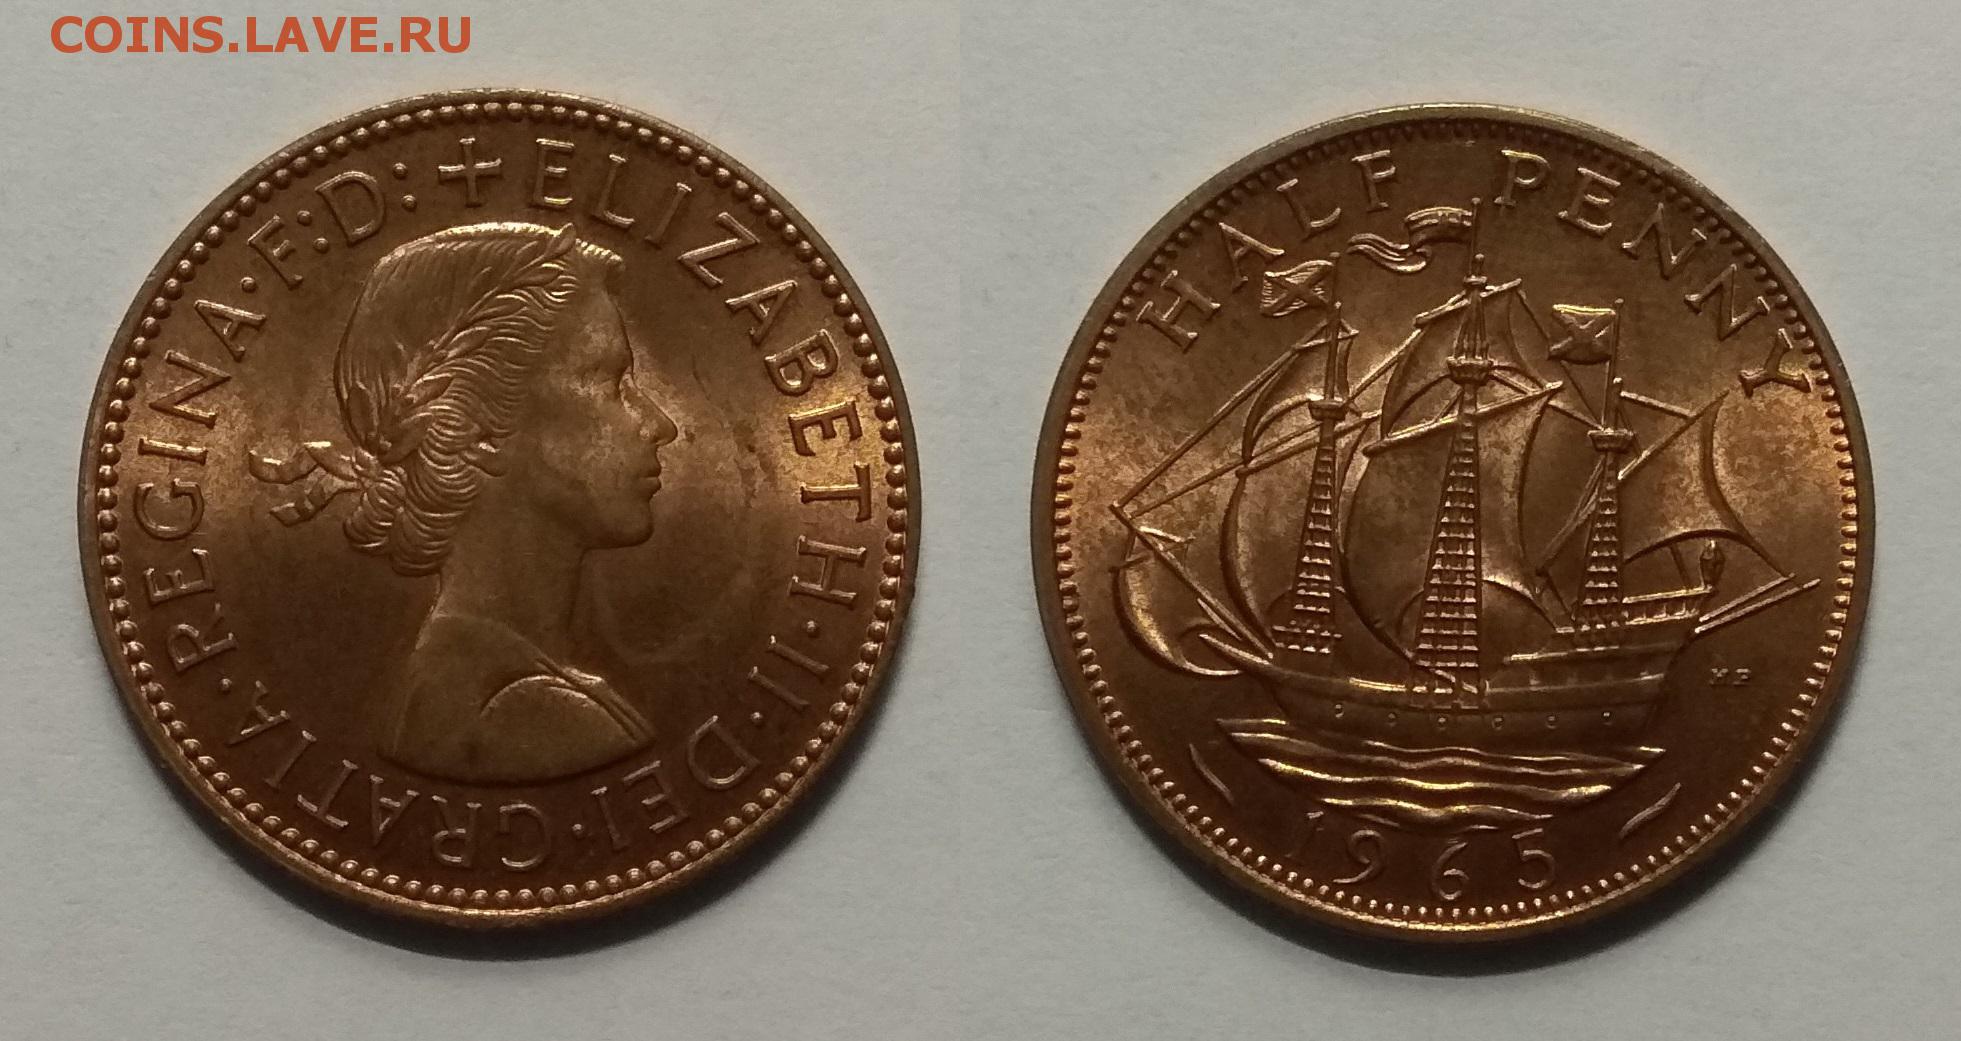 Coin meaning. GEORGIVS vi монета 1944 half Penny. Пол пенни 1965. Британское полпени Георга 6. Пол пенни 1965 год Великобритания.